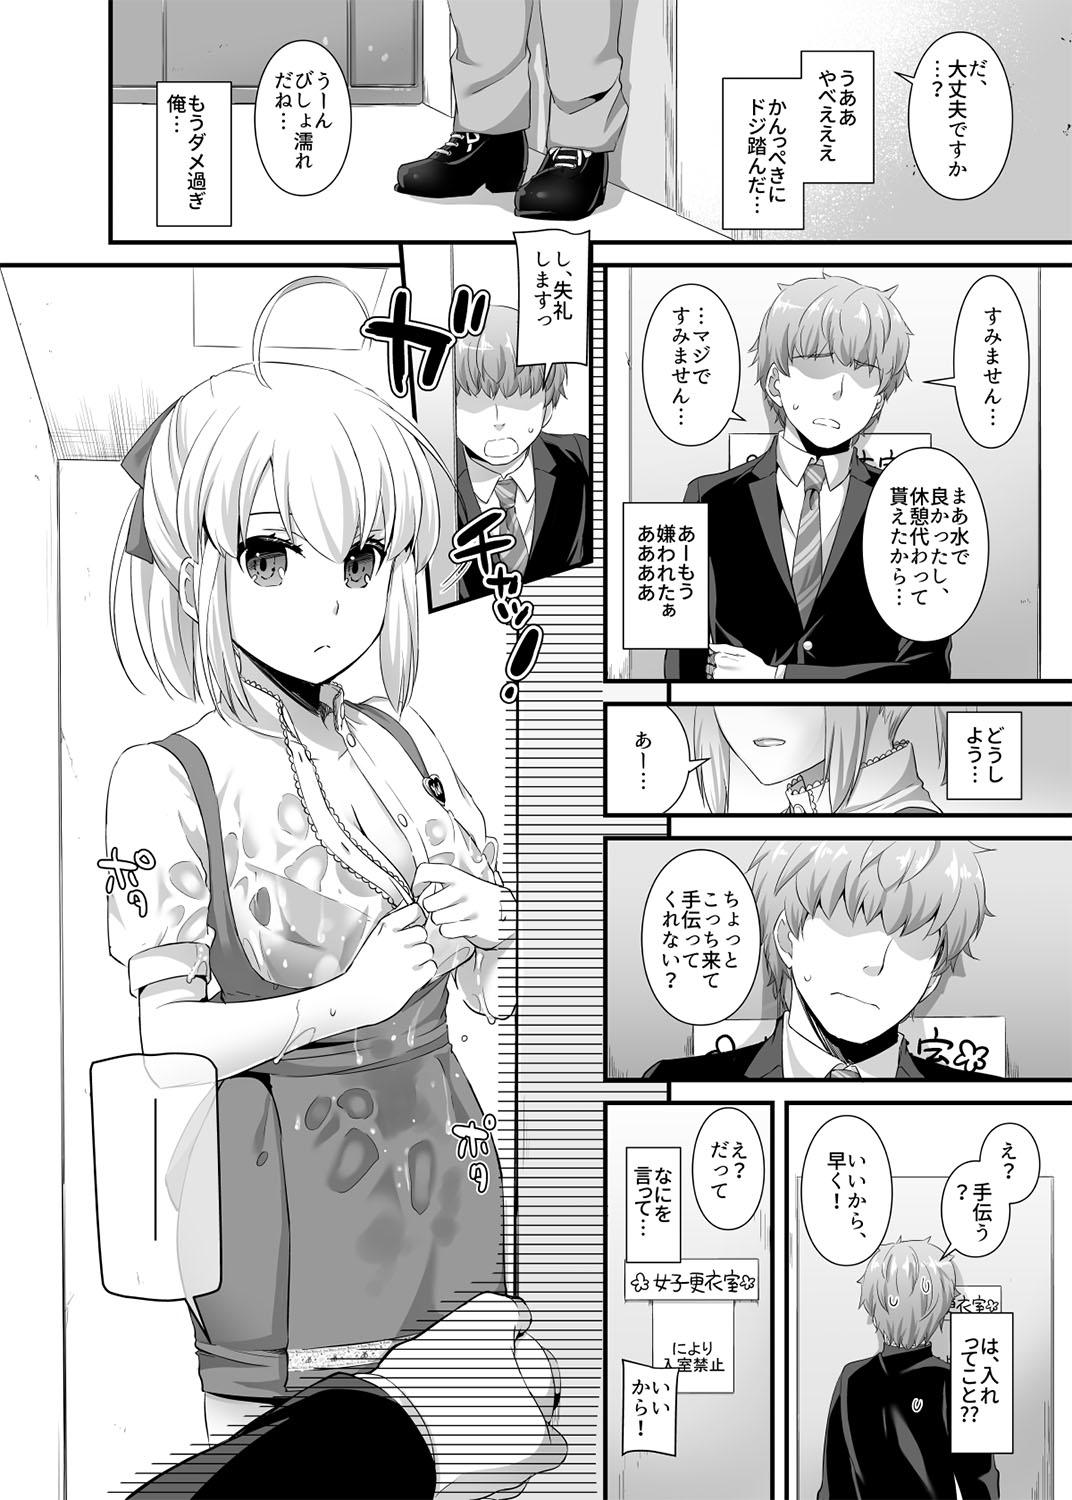 Stripping Seifuku Rakuen 32 Misutta Shigoto de Waitress-san to... Nudity - Page 5